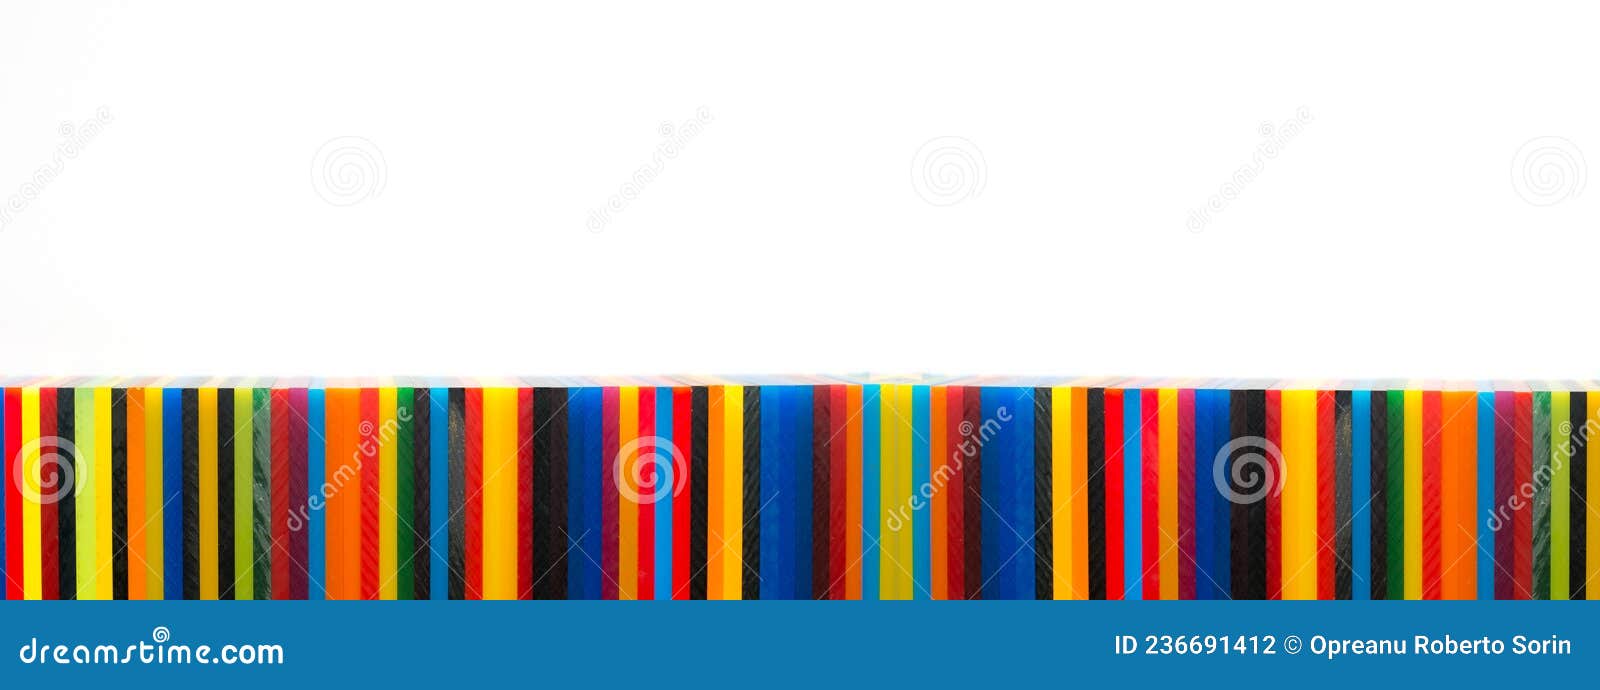 coloured cast acrylic sheet arranged